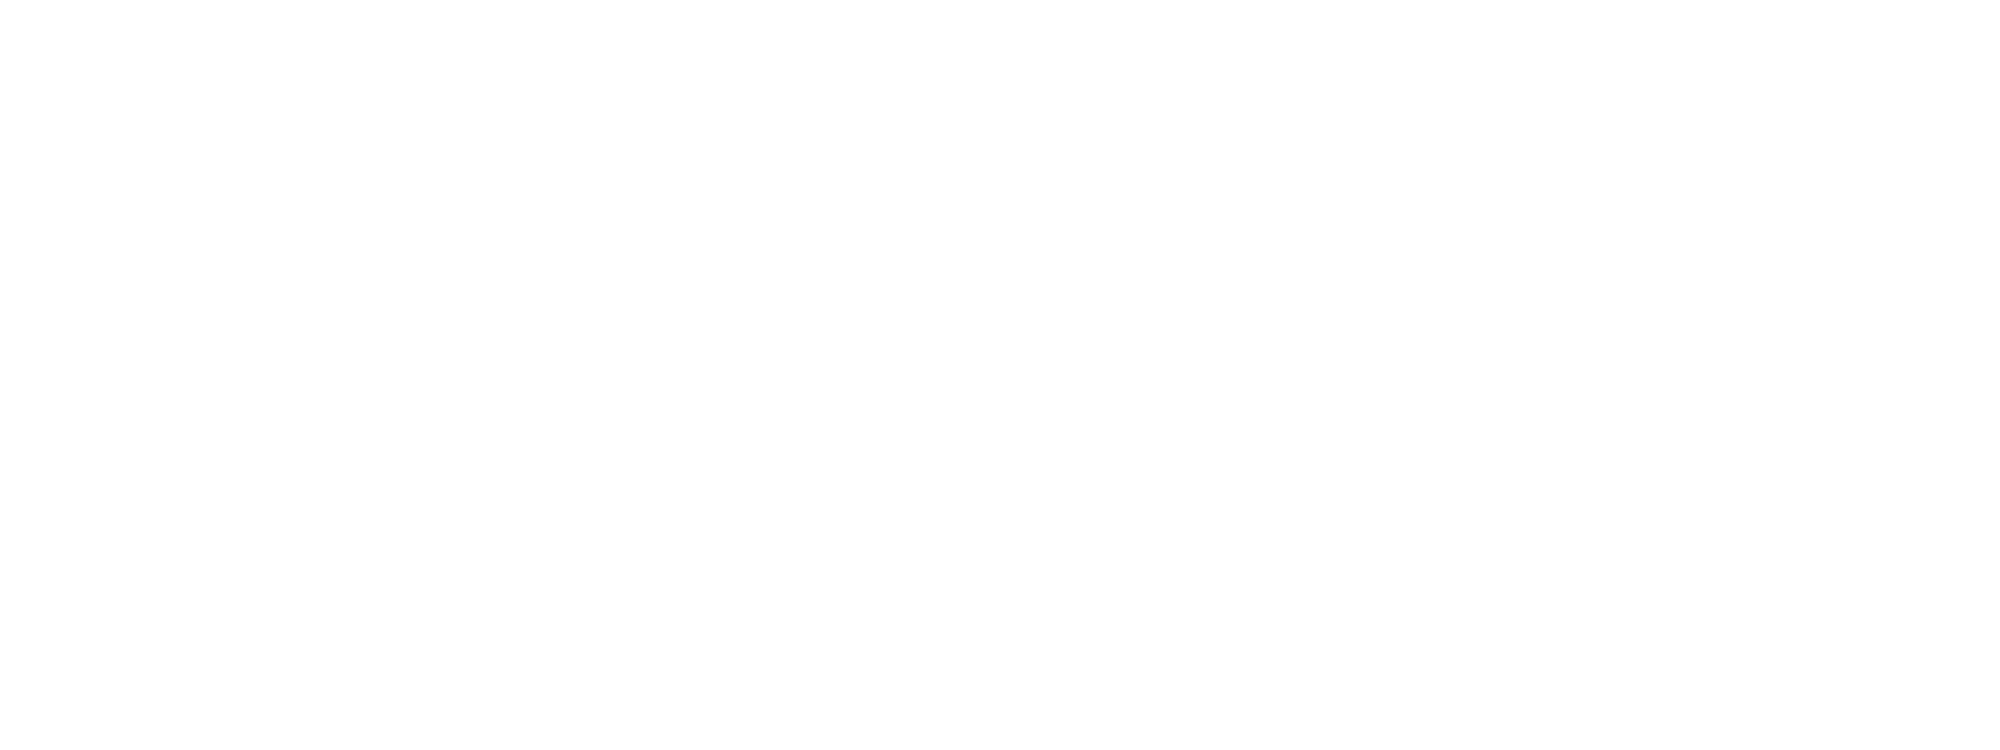 Express Keys